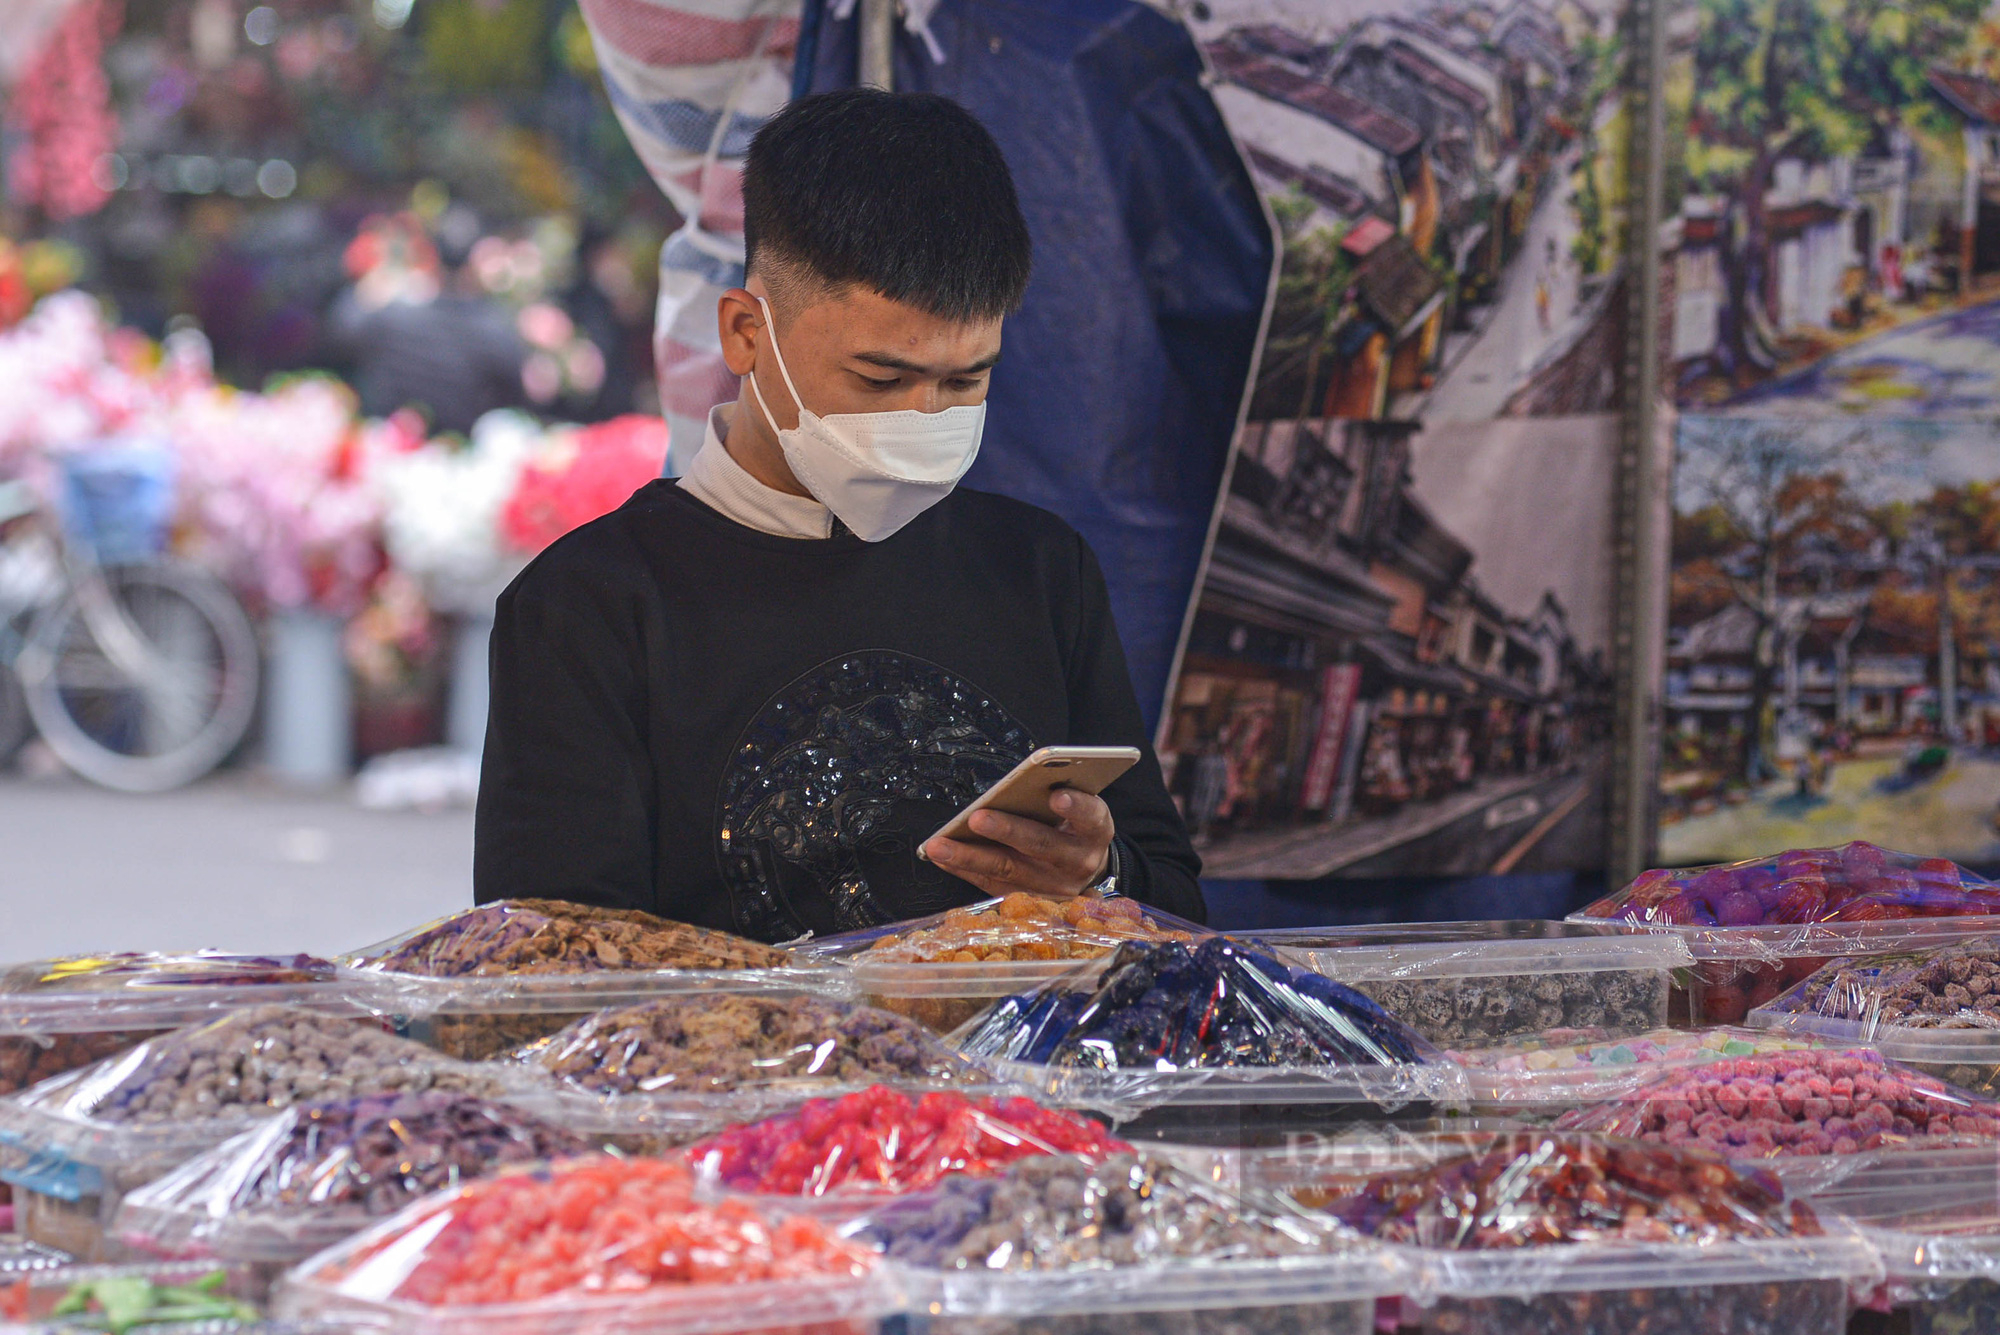 Chợ hoa truyền thống nổi tiếng nhất Hà Nội đìu hiu khách ngày đầu khai mạc - Ảnh 10.